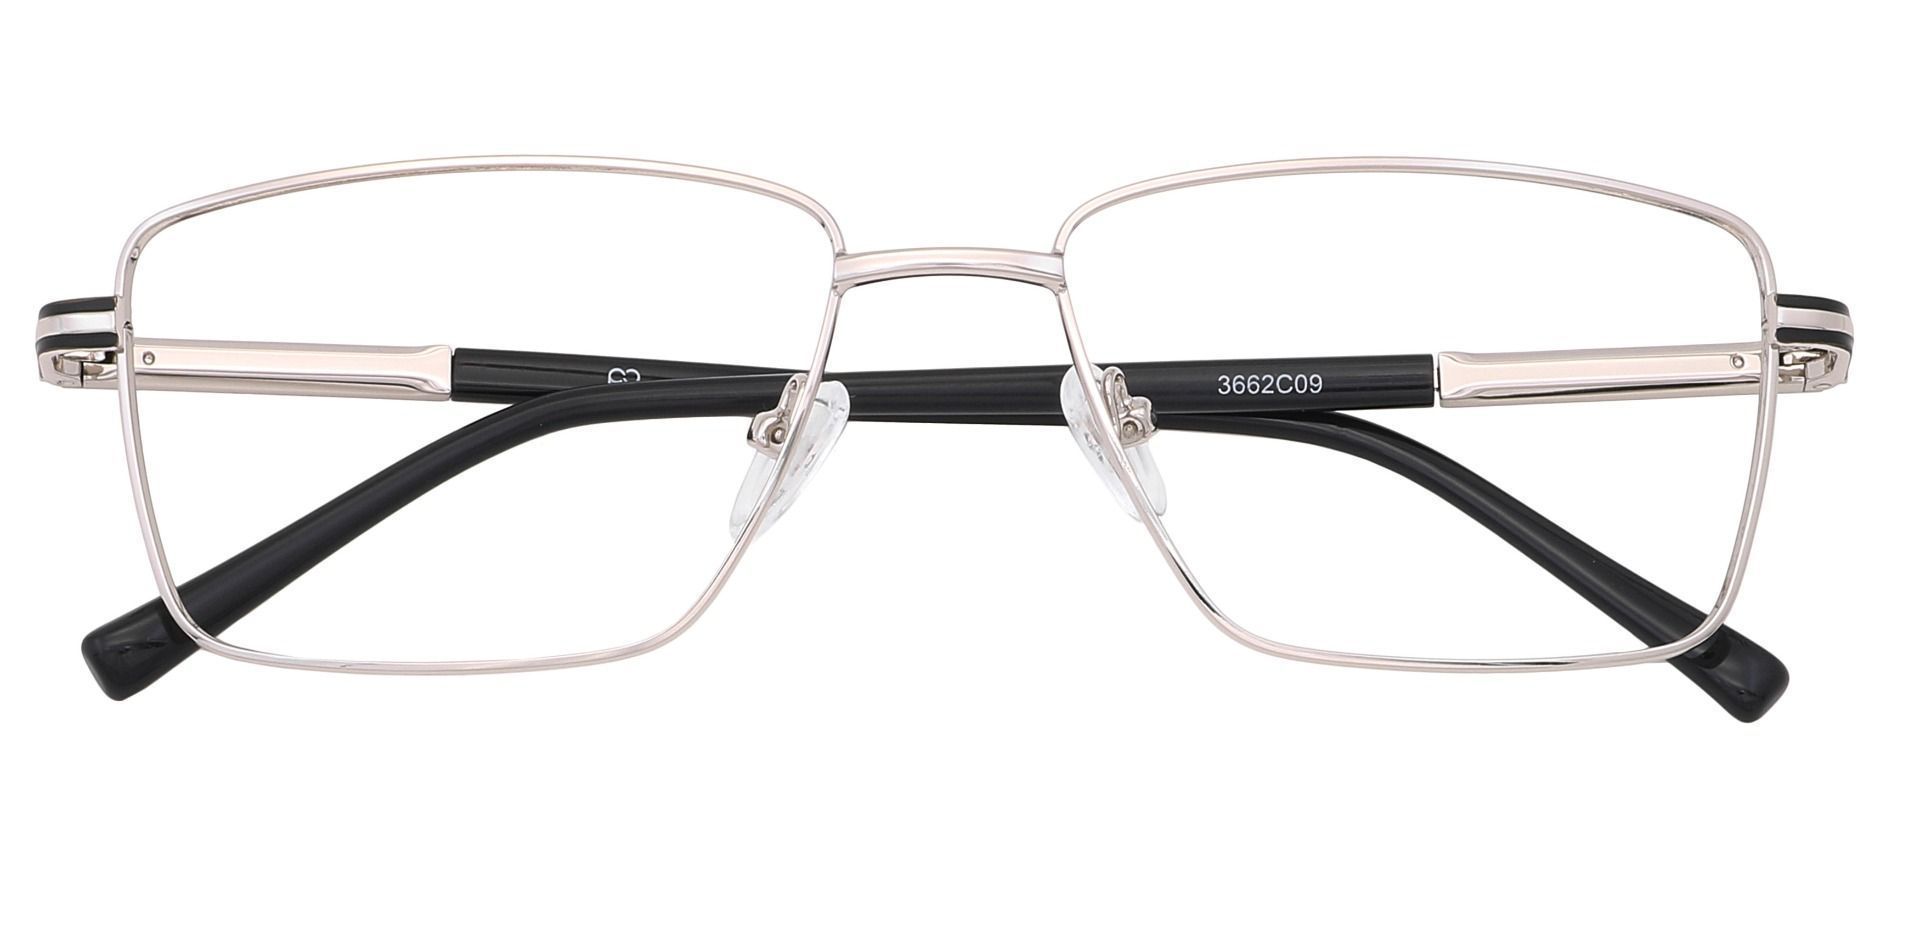 Daniel Rectangle Eyeglasses Frame - Silver